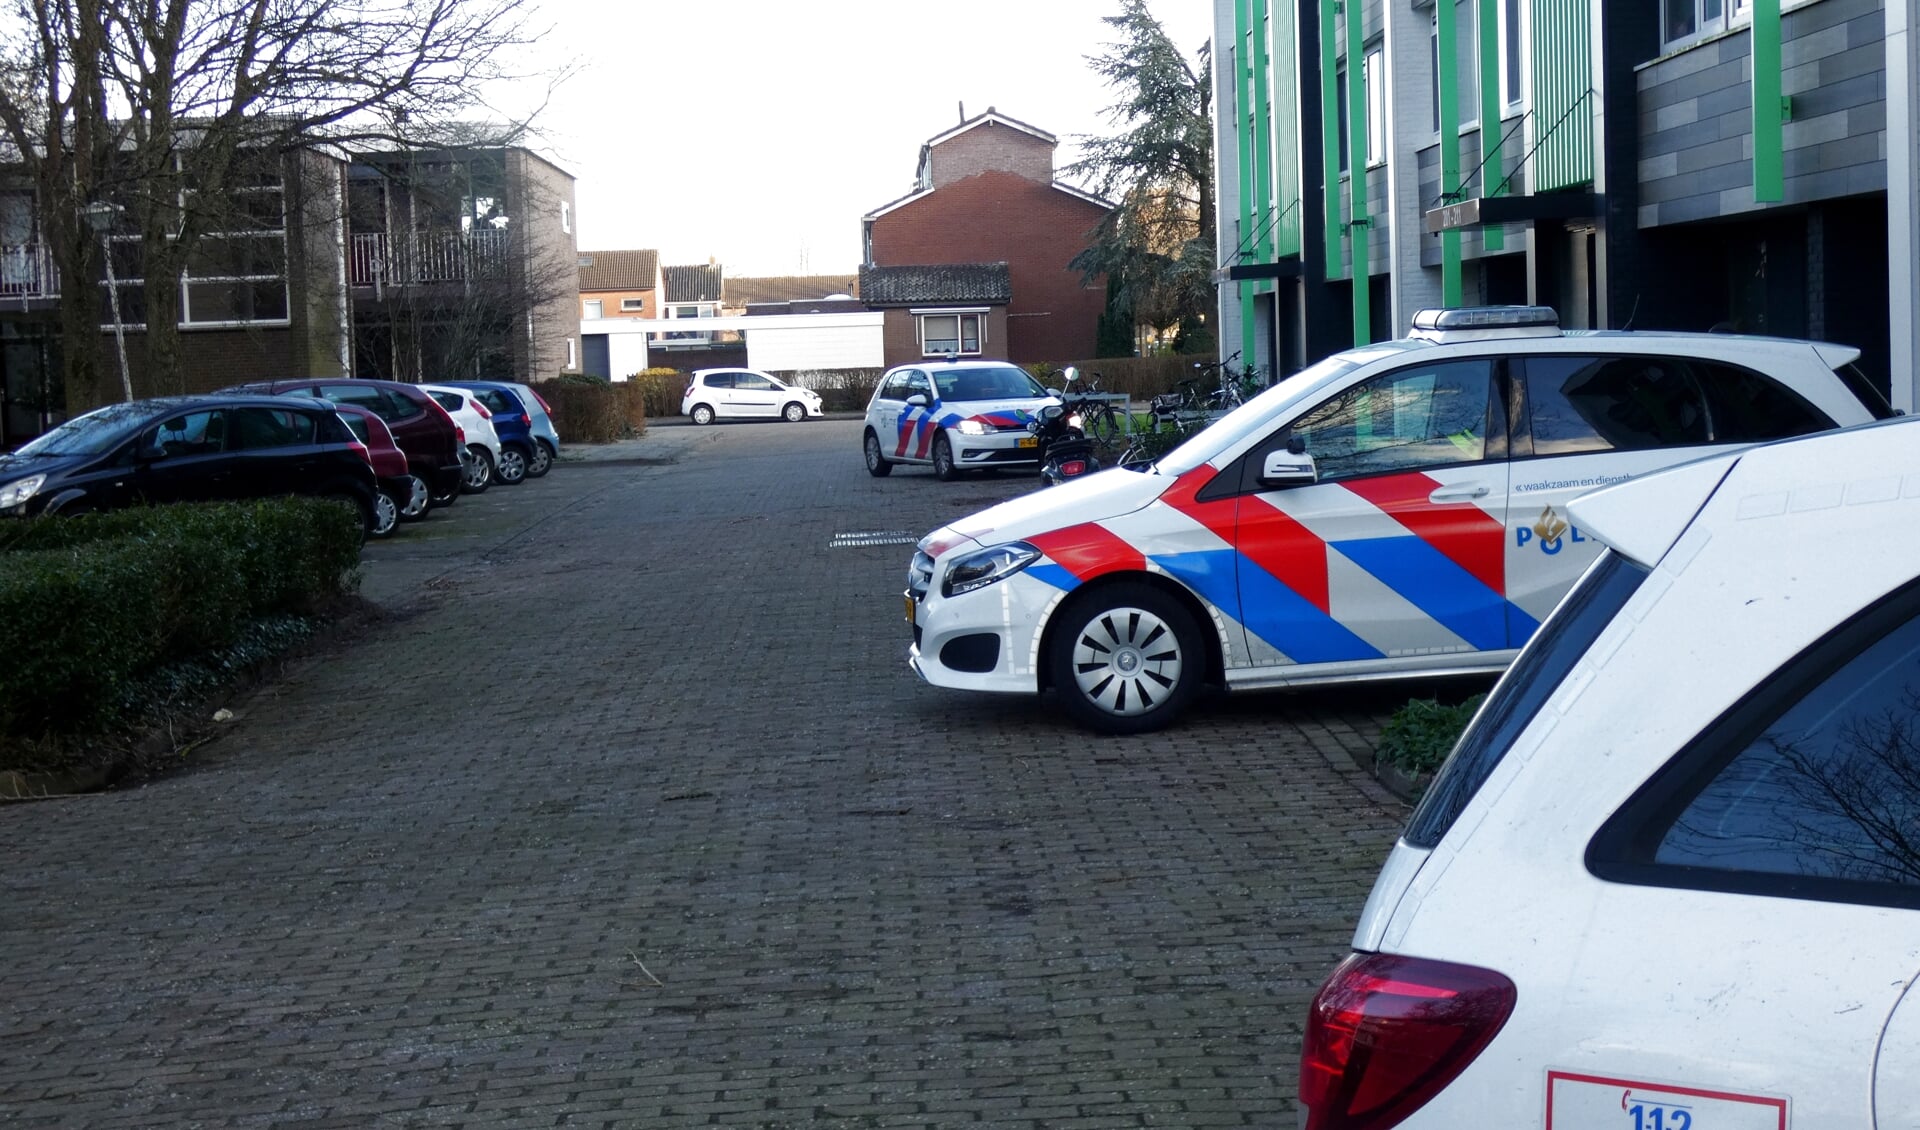 KAMPEN - Woensdagmiddag 23 februari omstreeks 16.15 uur heeft de politie een onderzoek ingesteld na een melding van een overval aan de Beekmanstraat in Kampen. Meerder politiewagen zijn bij een flatgebouw aanwezig.